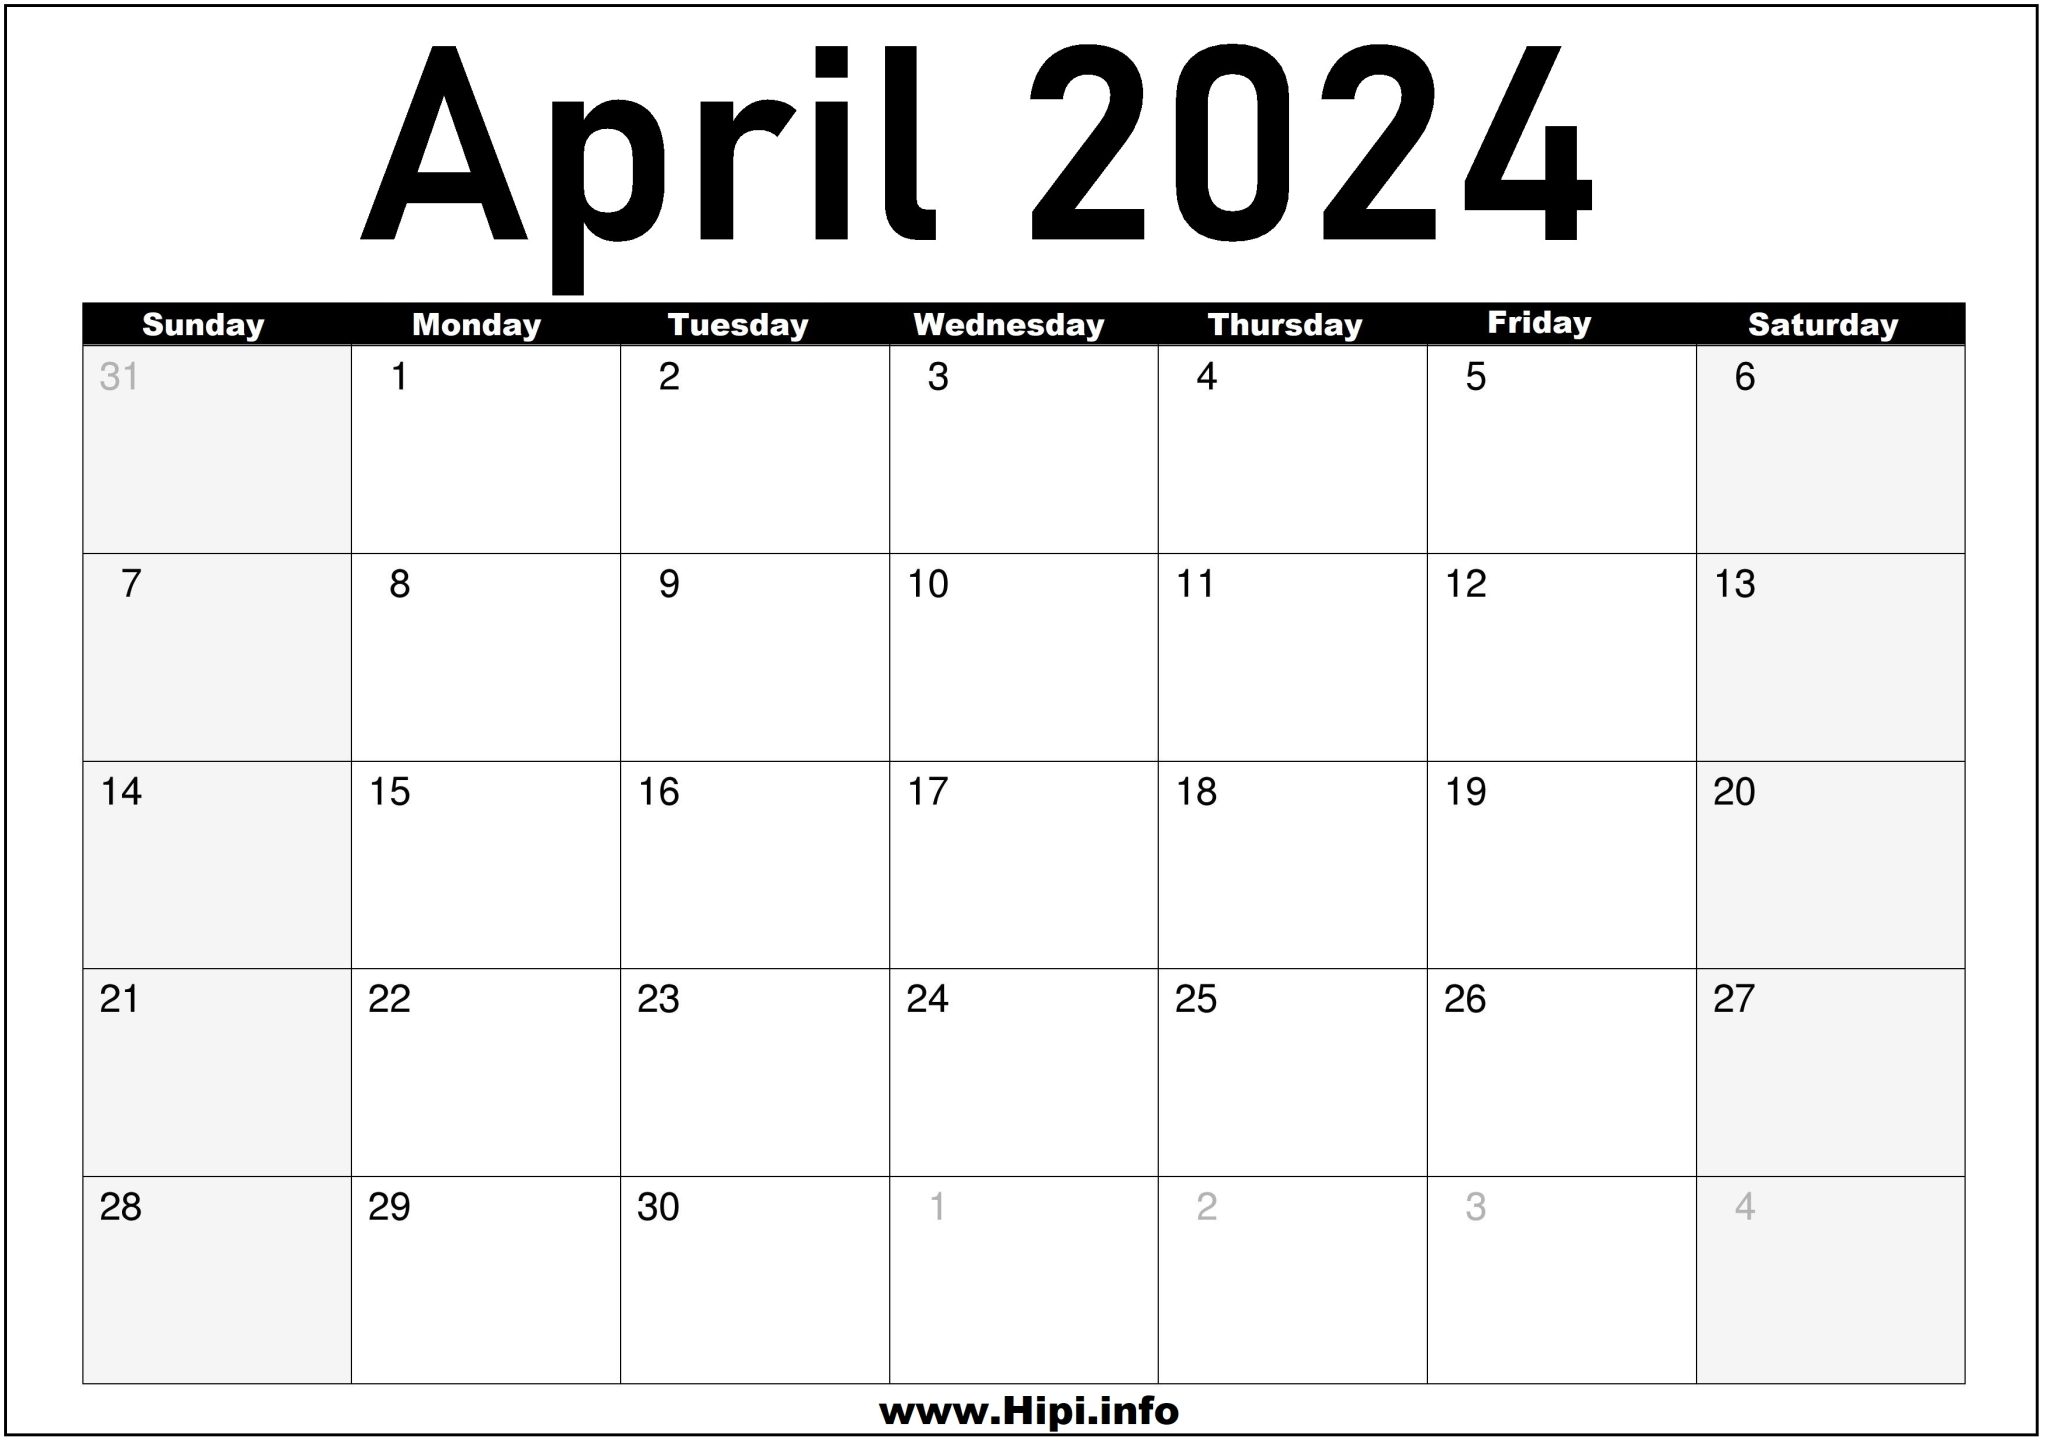 April 2024 Monthly Calendar Hipi.info